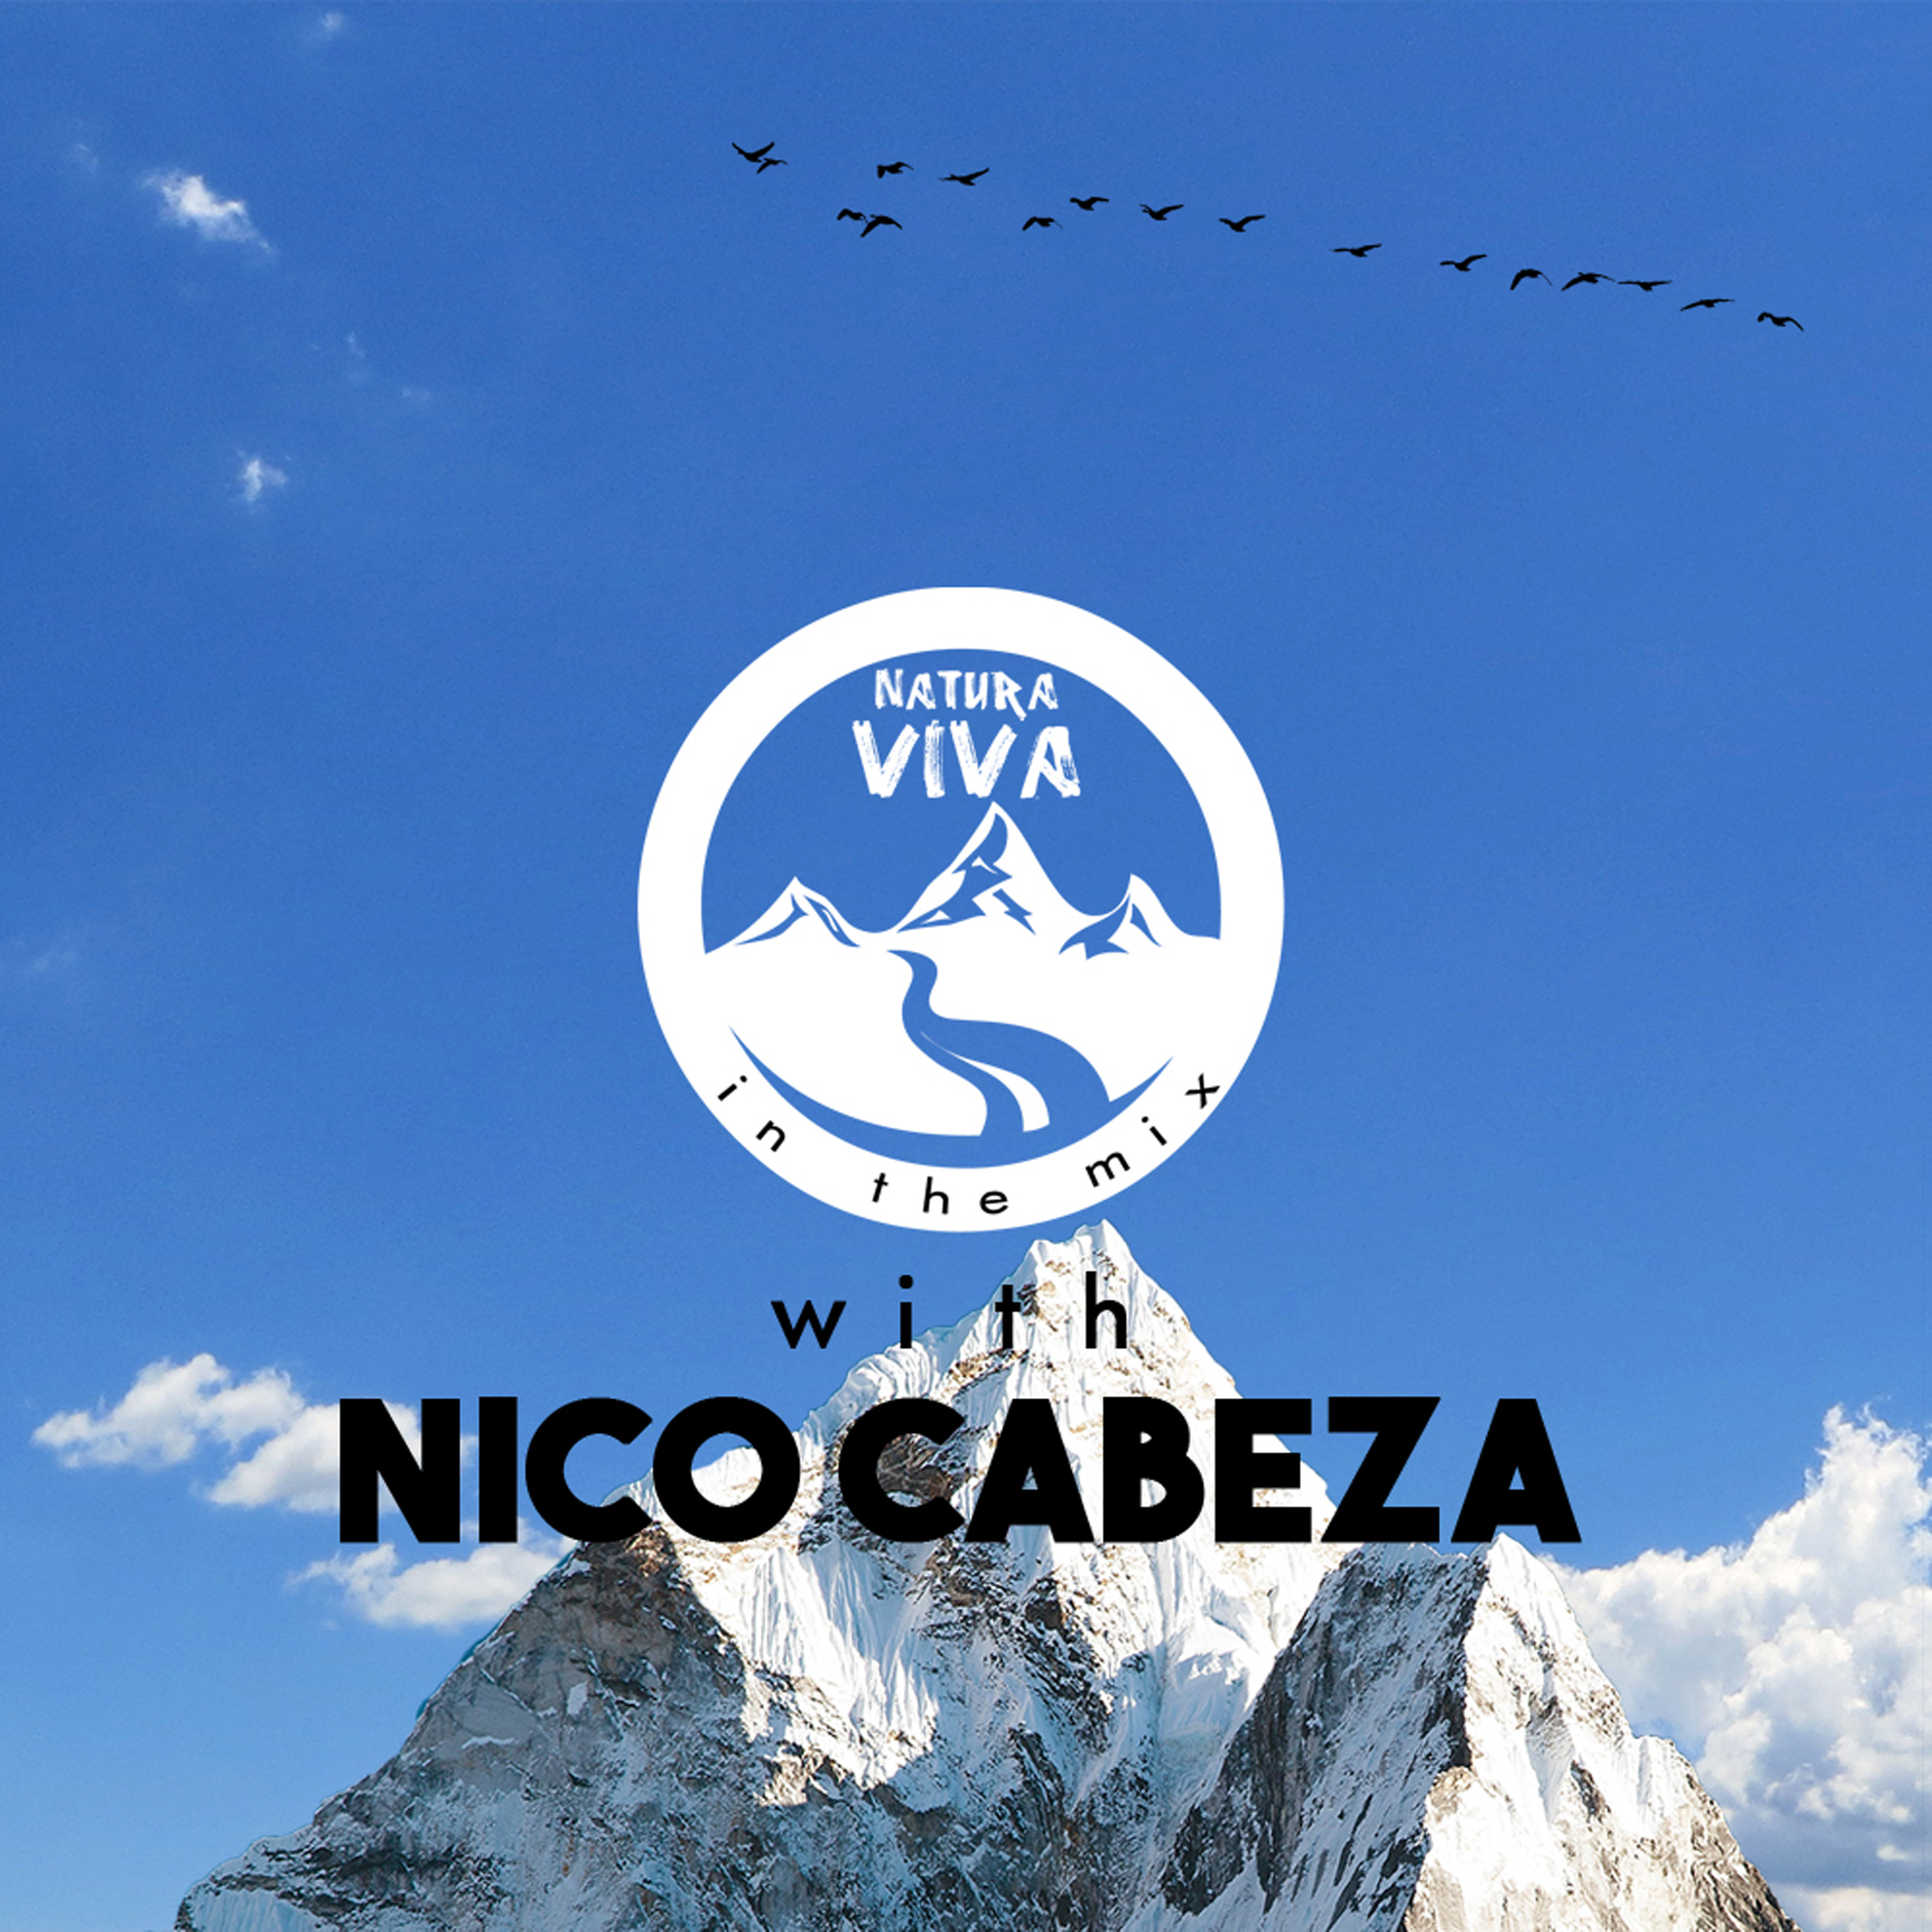 Natura Viva In The Mix With Nico Cabeza